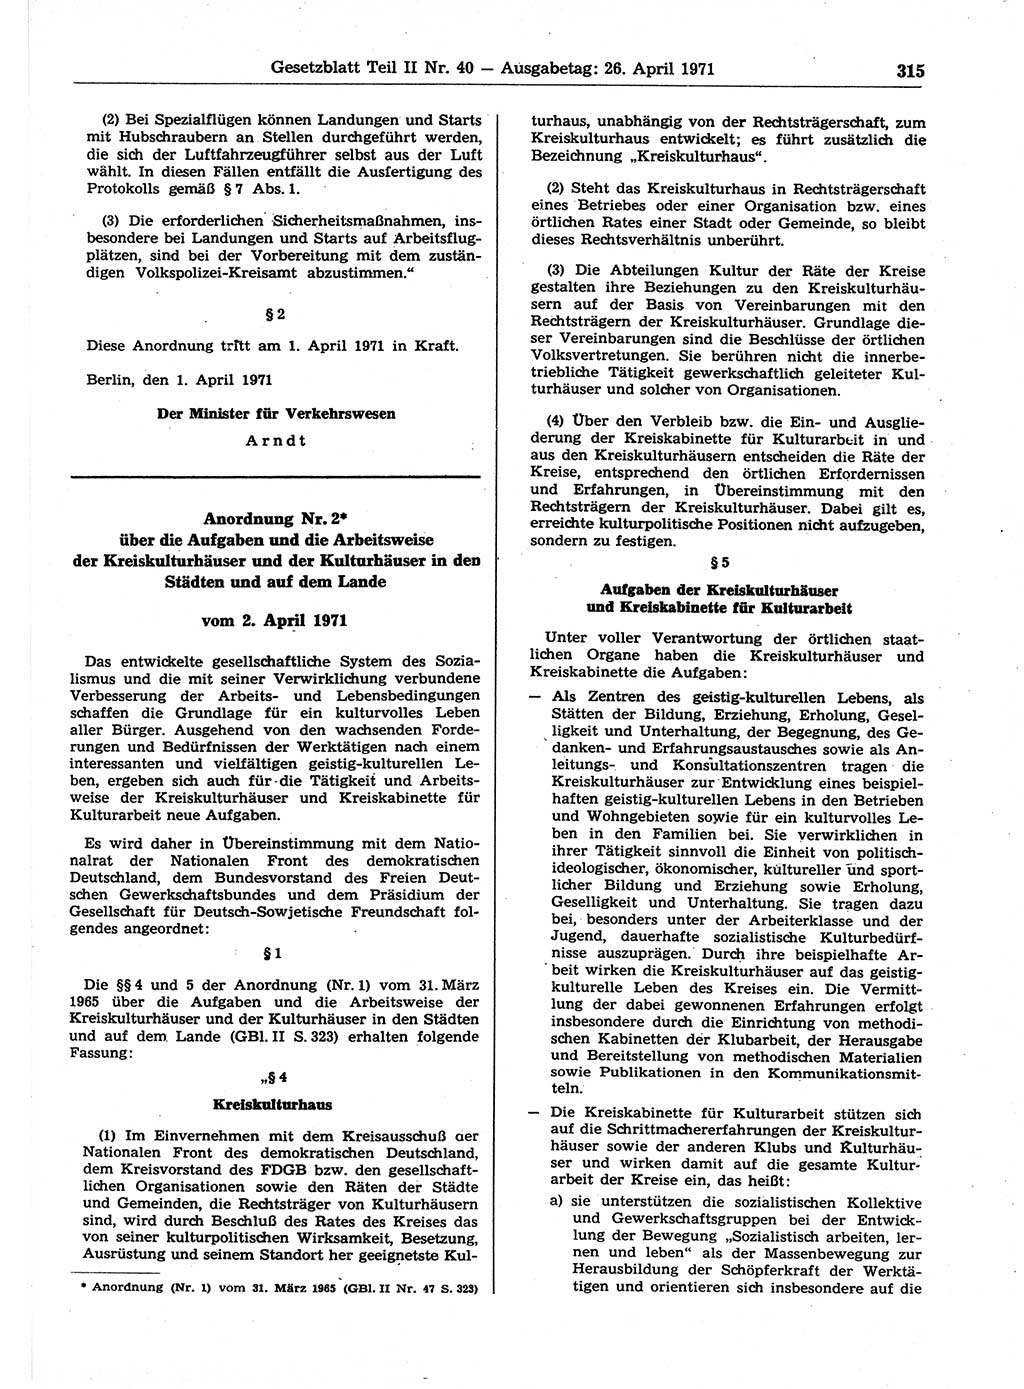 Gesetzblatt (GBl.) der Deutschen Demokratischen Republik (DDR) Teil ⅠⅠ 1971, Seite 315 (GBl. DDR ⅠⅠ 1971, S. 315)